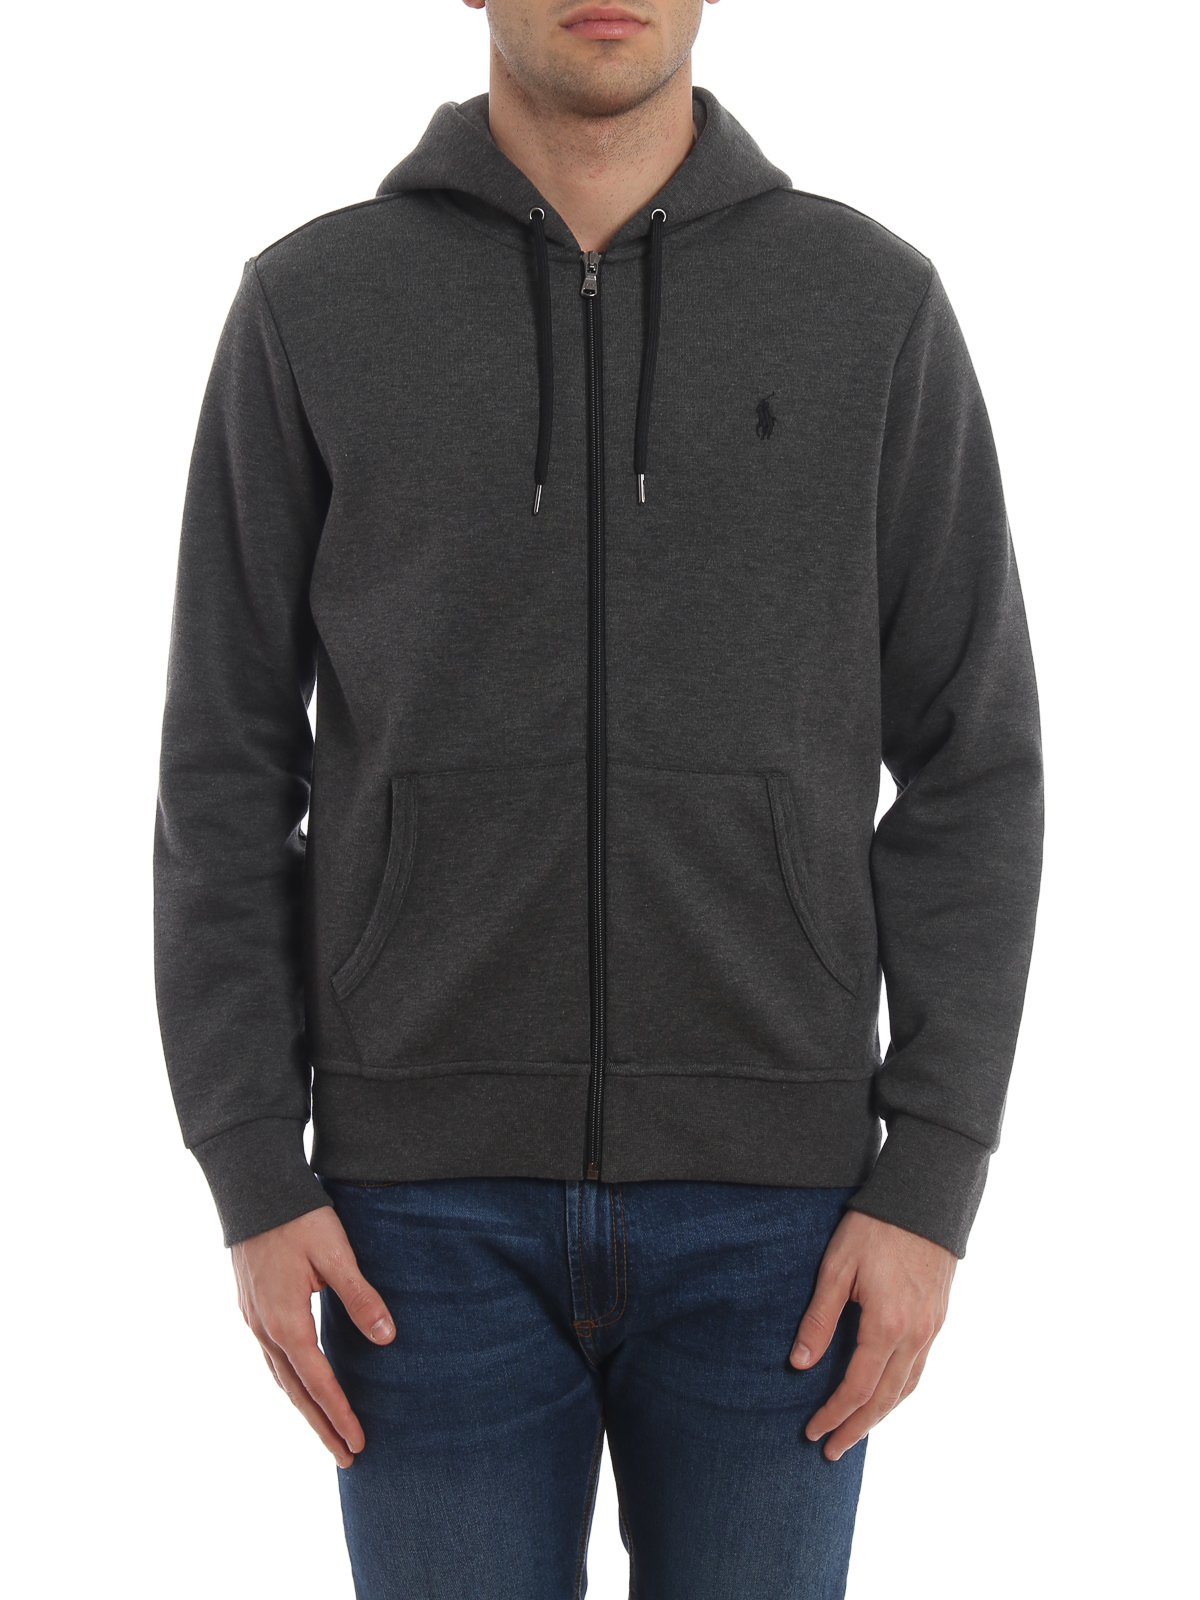 Sweatshirts & Sweaters Polo Ralph Lauren - Dark grey stretch cotton hoodie  - 710652313032